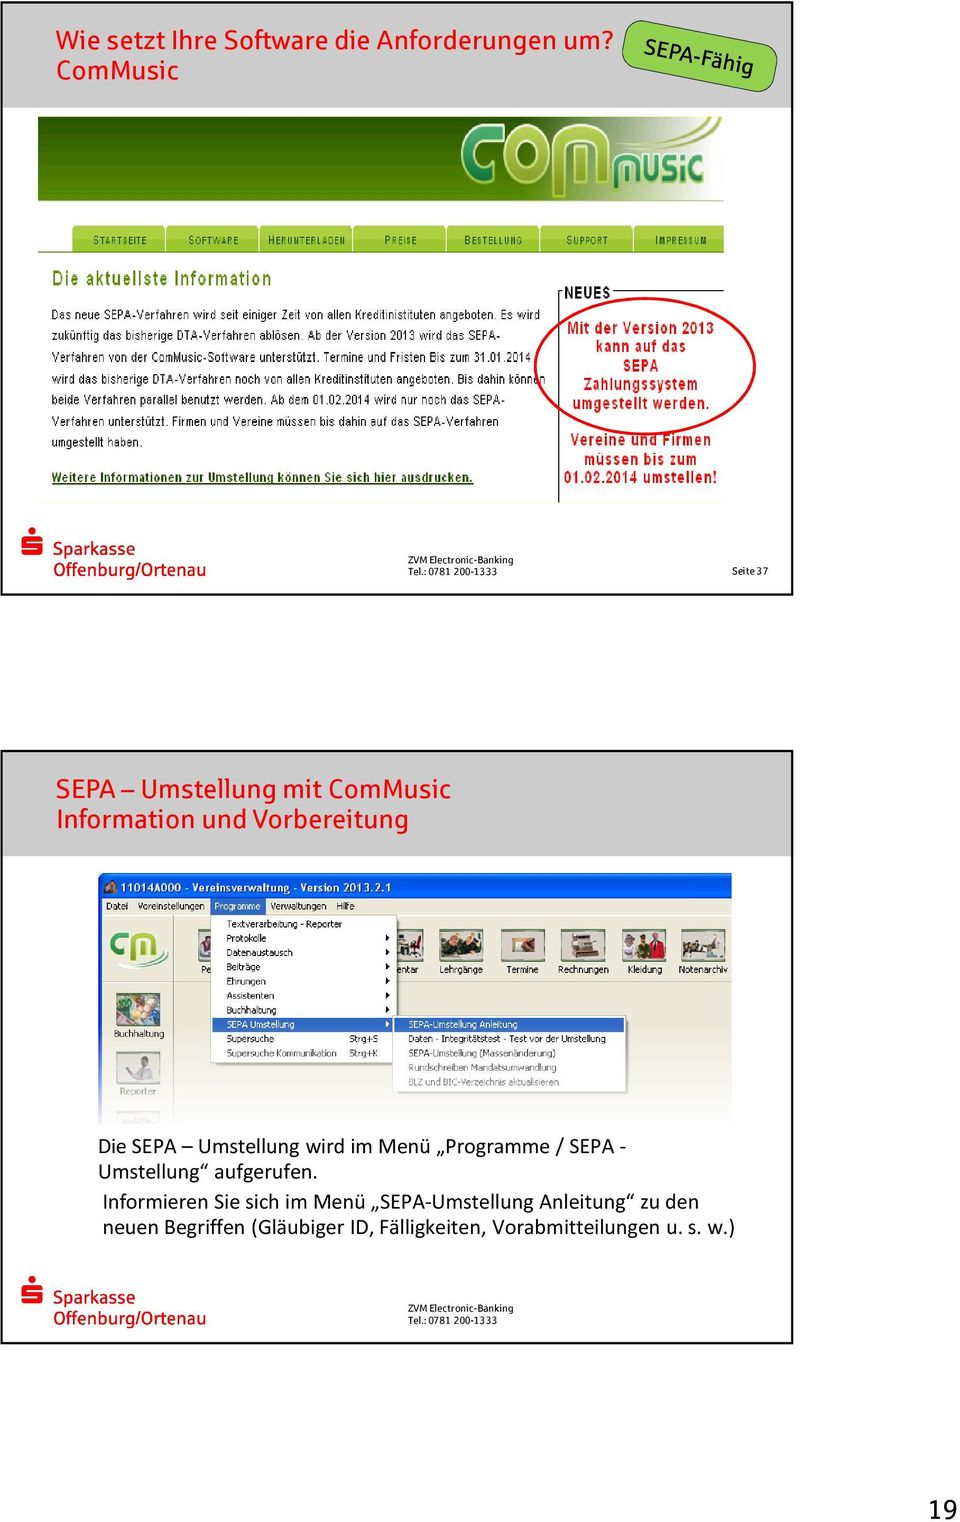 SEPA Umstellung wird im Menü Programme / SEPA - Umstellung aufgerufen.